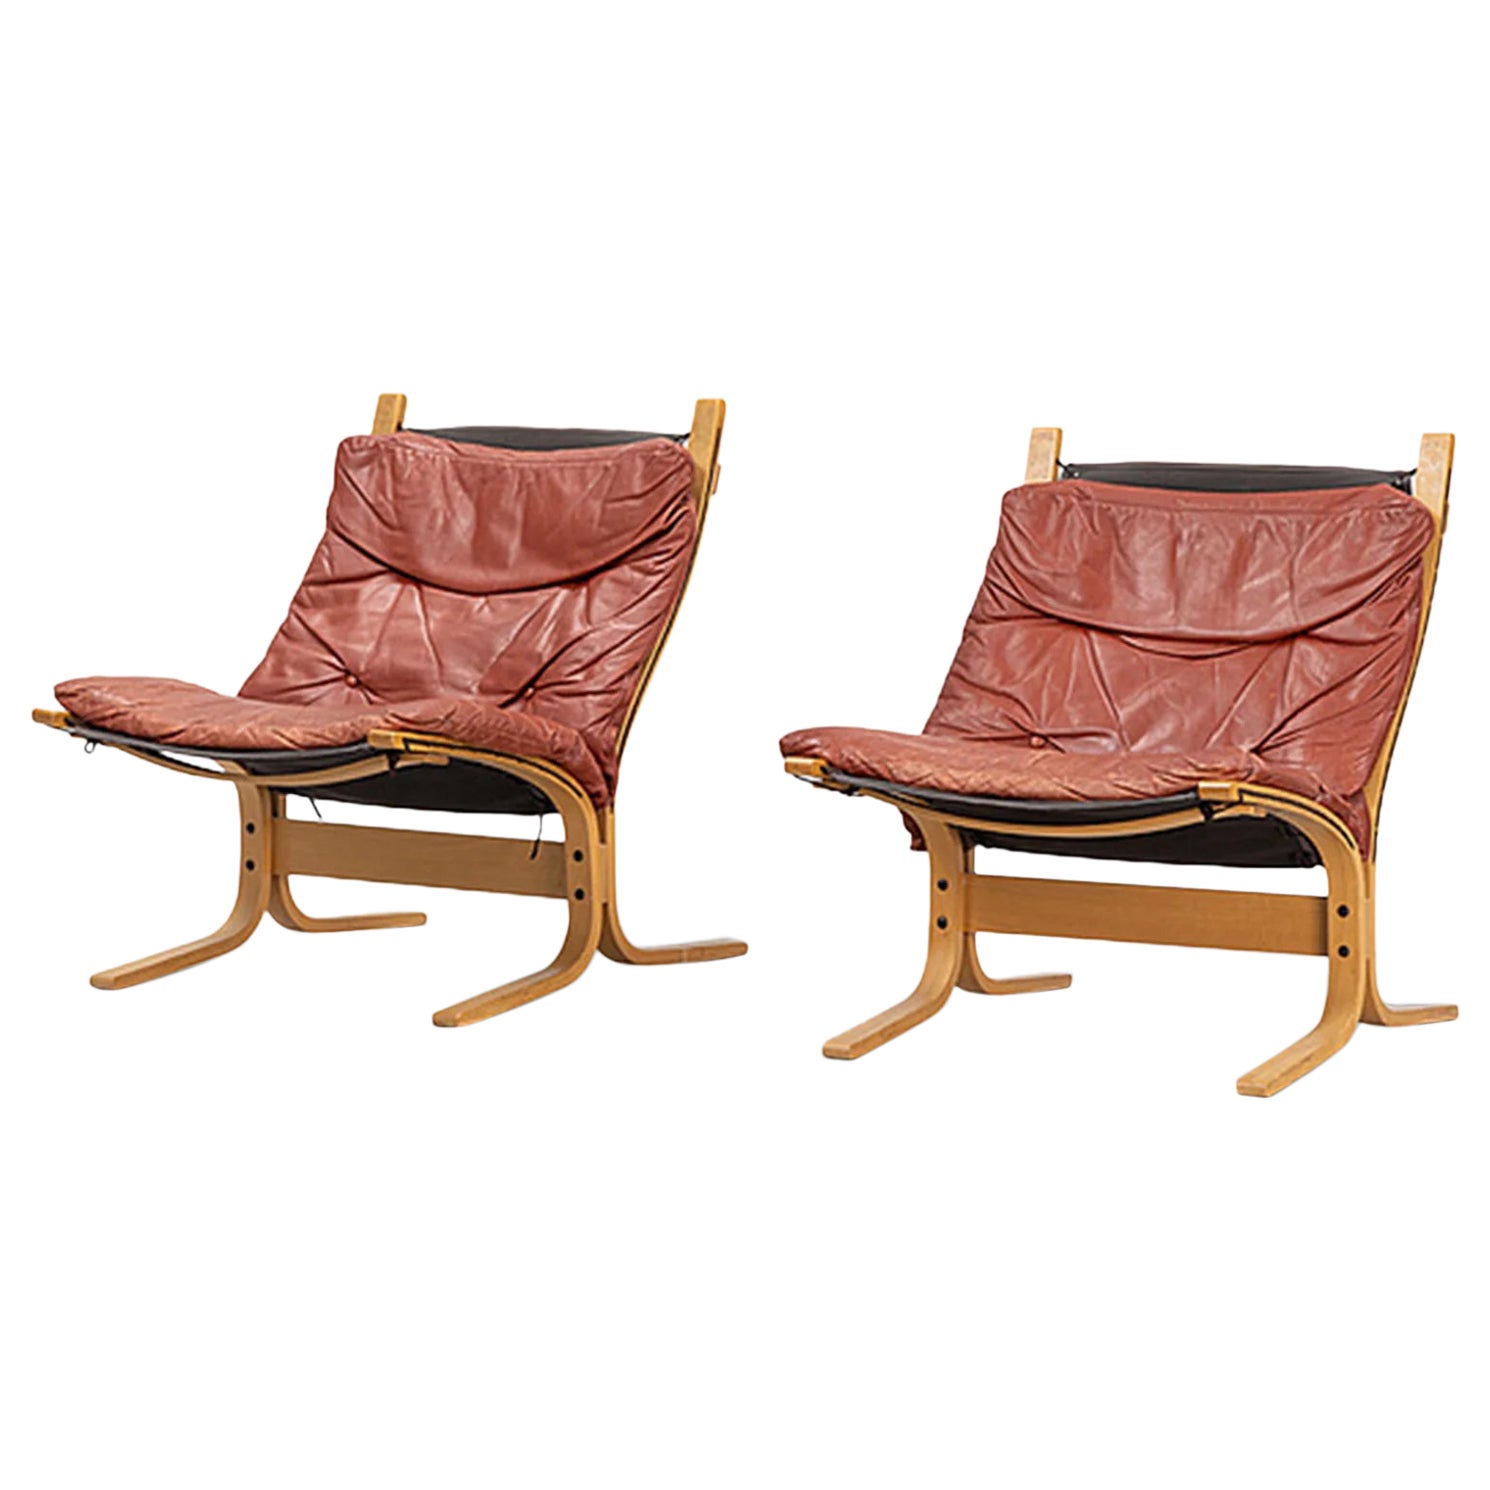 Paar Loungesessel mit niedriger Rückenlehne „Siesta“ aus rostfarbenem, getöntem Leder + Buche